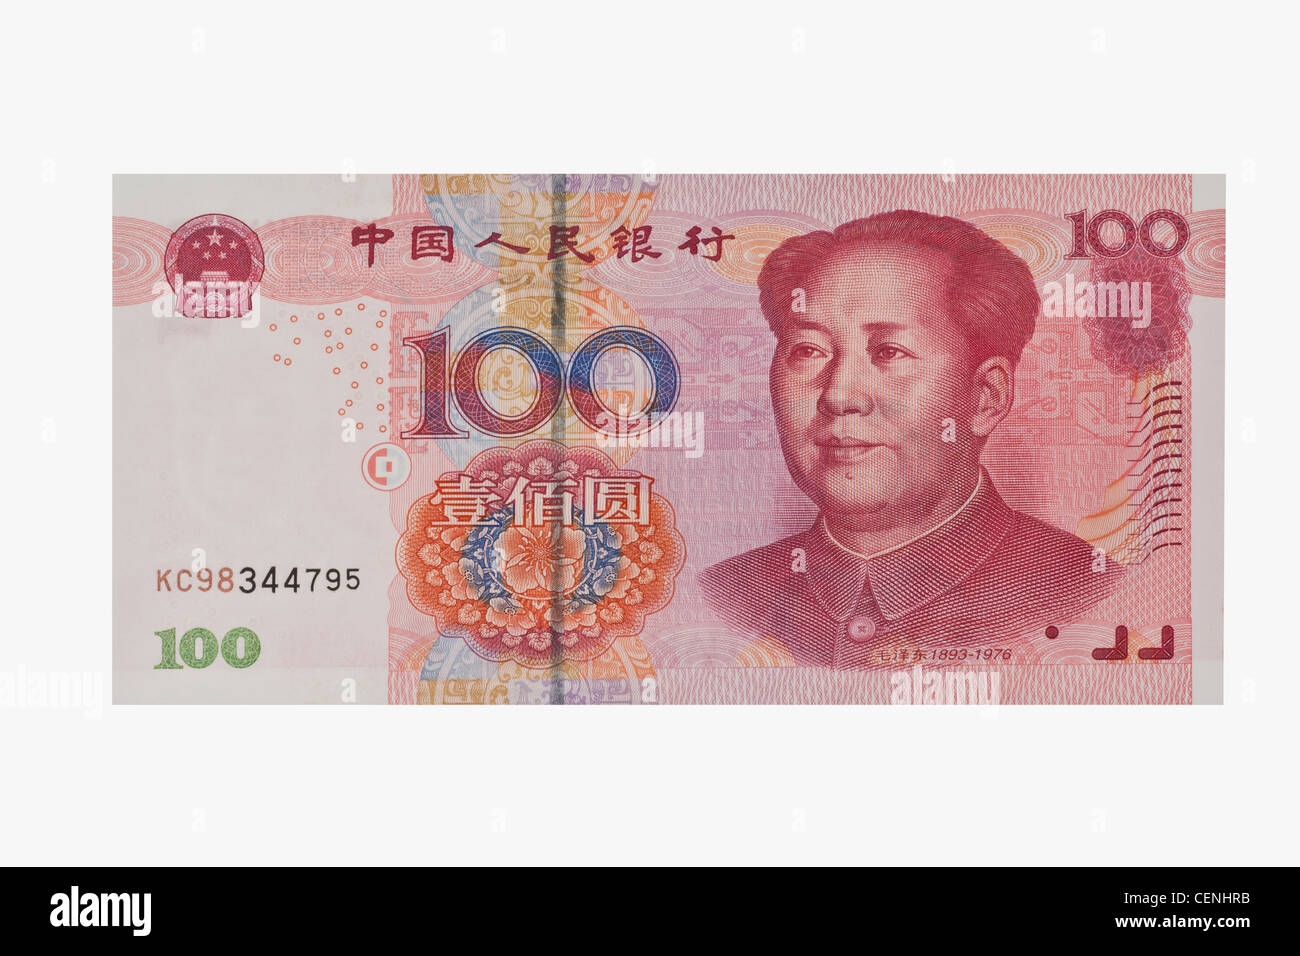 100 yuan bill con il ritratto di Mao Zedong. Il renminbi, la valuta cinese, è stato introdotto nel 1949. Foto Stock